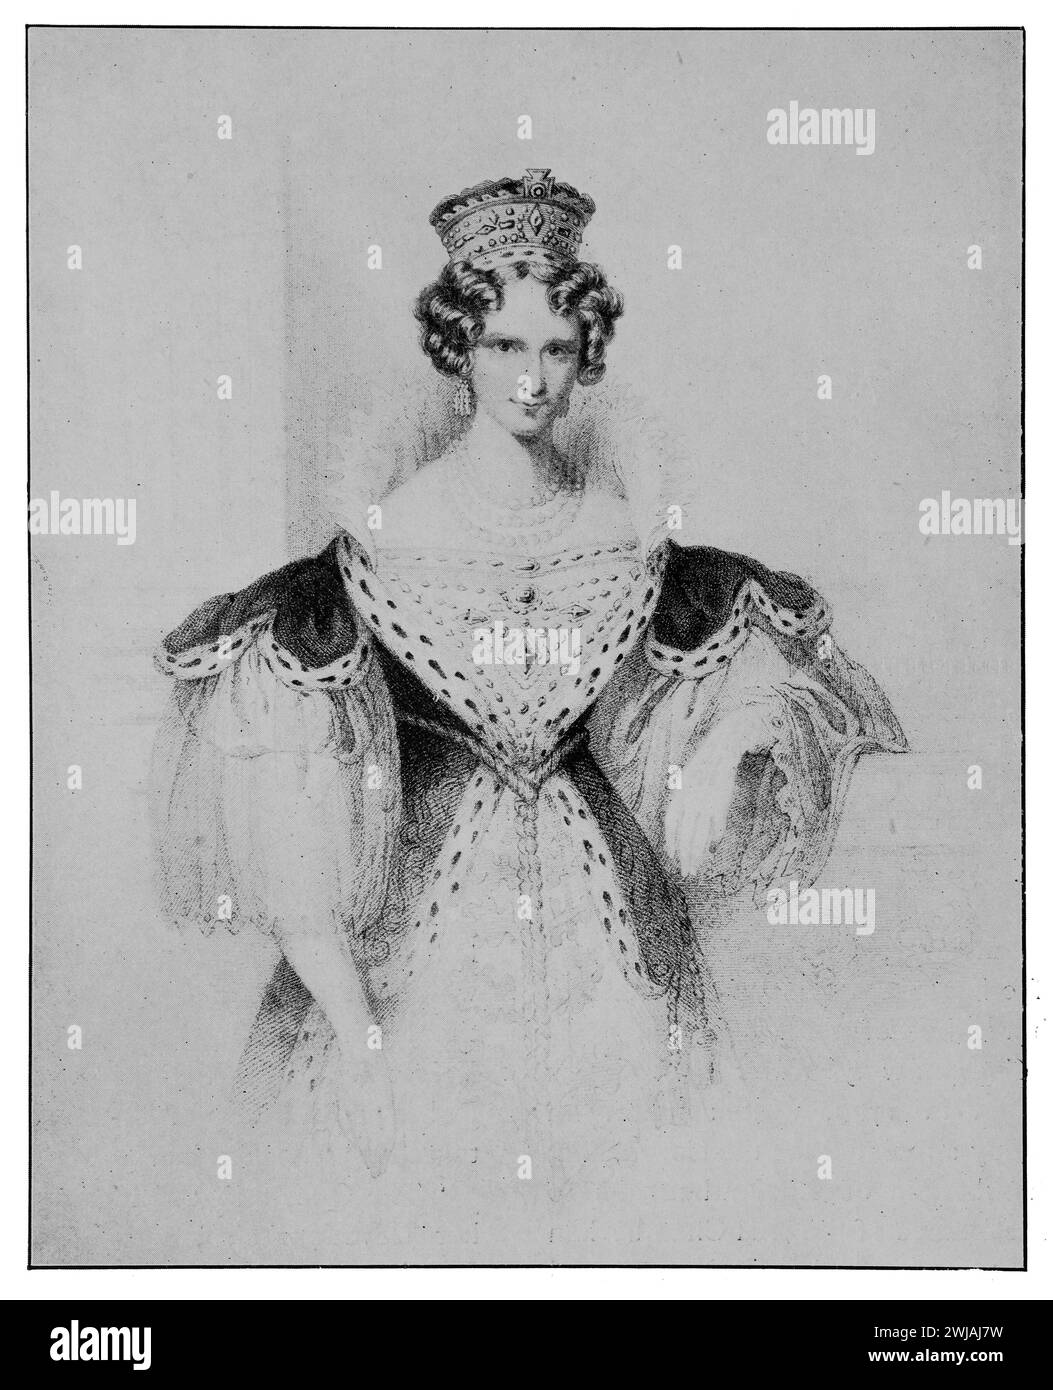 Adélaïde de Saxe-Meiningen (Adélaïde Amelia Louise Theresa Caroline ; 13 août 1792 au 2 décembre 1849) dans ses robes de couronnement. Elle est reine du Royaume-Uni de Grande-Bretagne et d'Irlande et reine de Hanovre du 26 juin 1830 au 20 juin 1837 en tant qu'épouse du roi Guillaume IV. Gravure sur acier par Edward Francis Finden. Illustration en noir et blanc du Connoisseur, un magazine illustré pour collectionneurs Voll 3 (mai-août 1902) publié à Londres. Banque D'Images